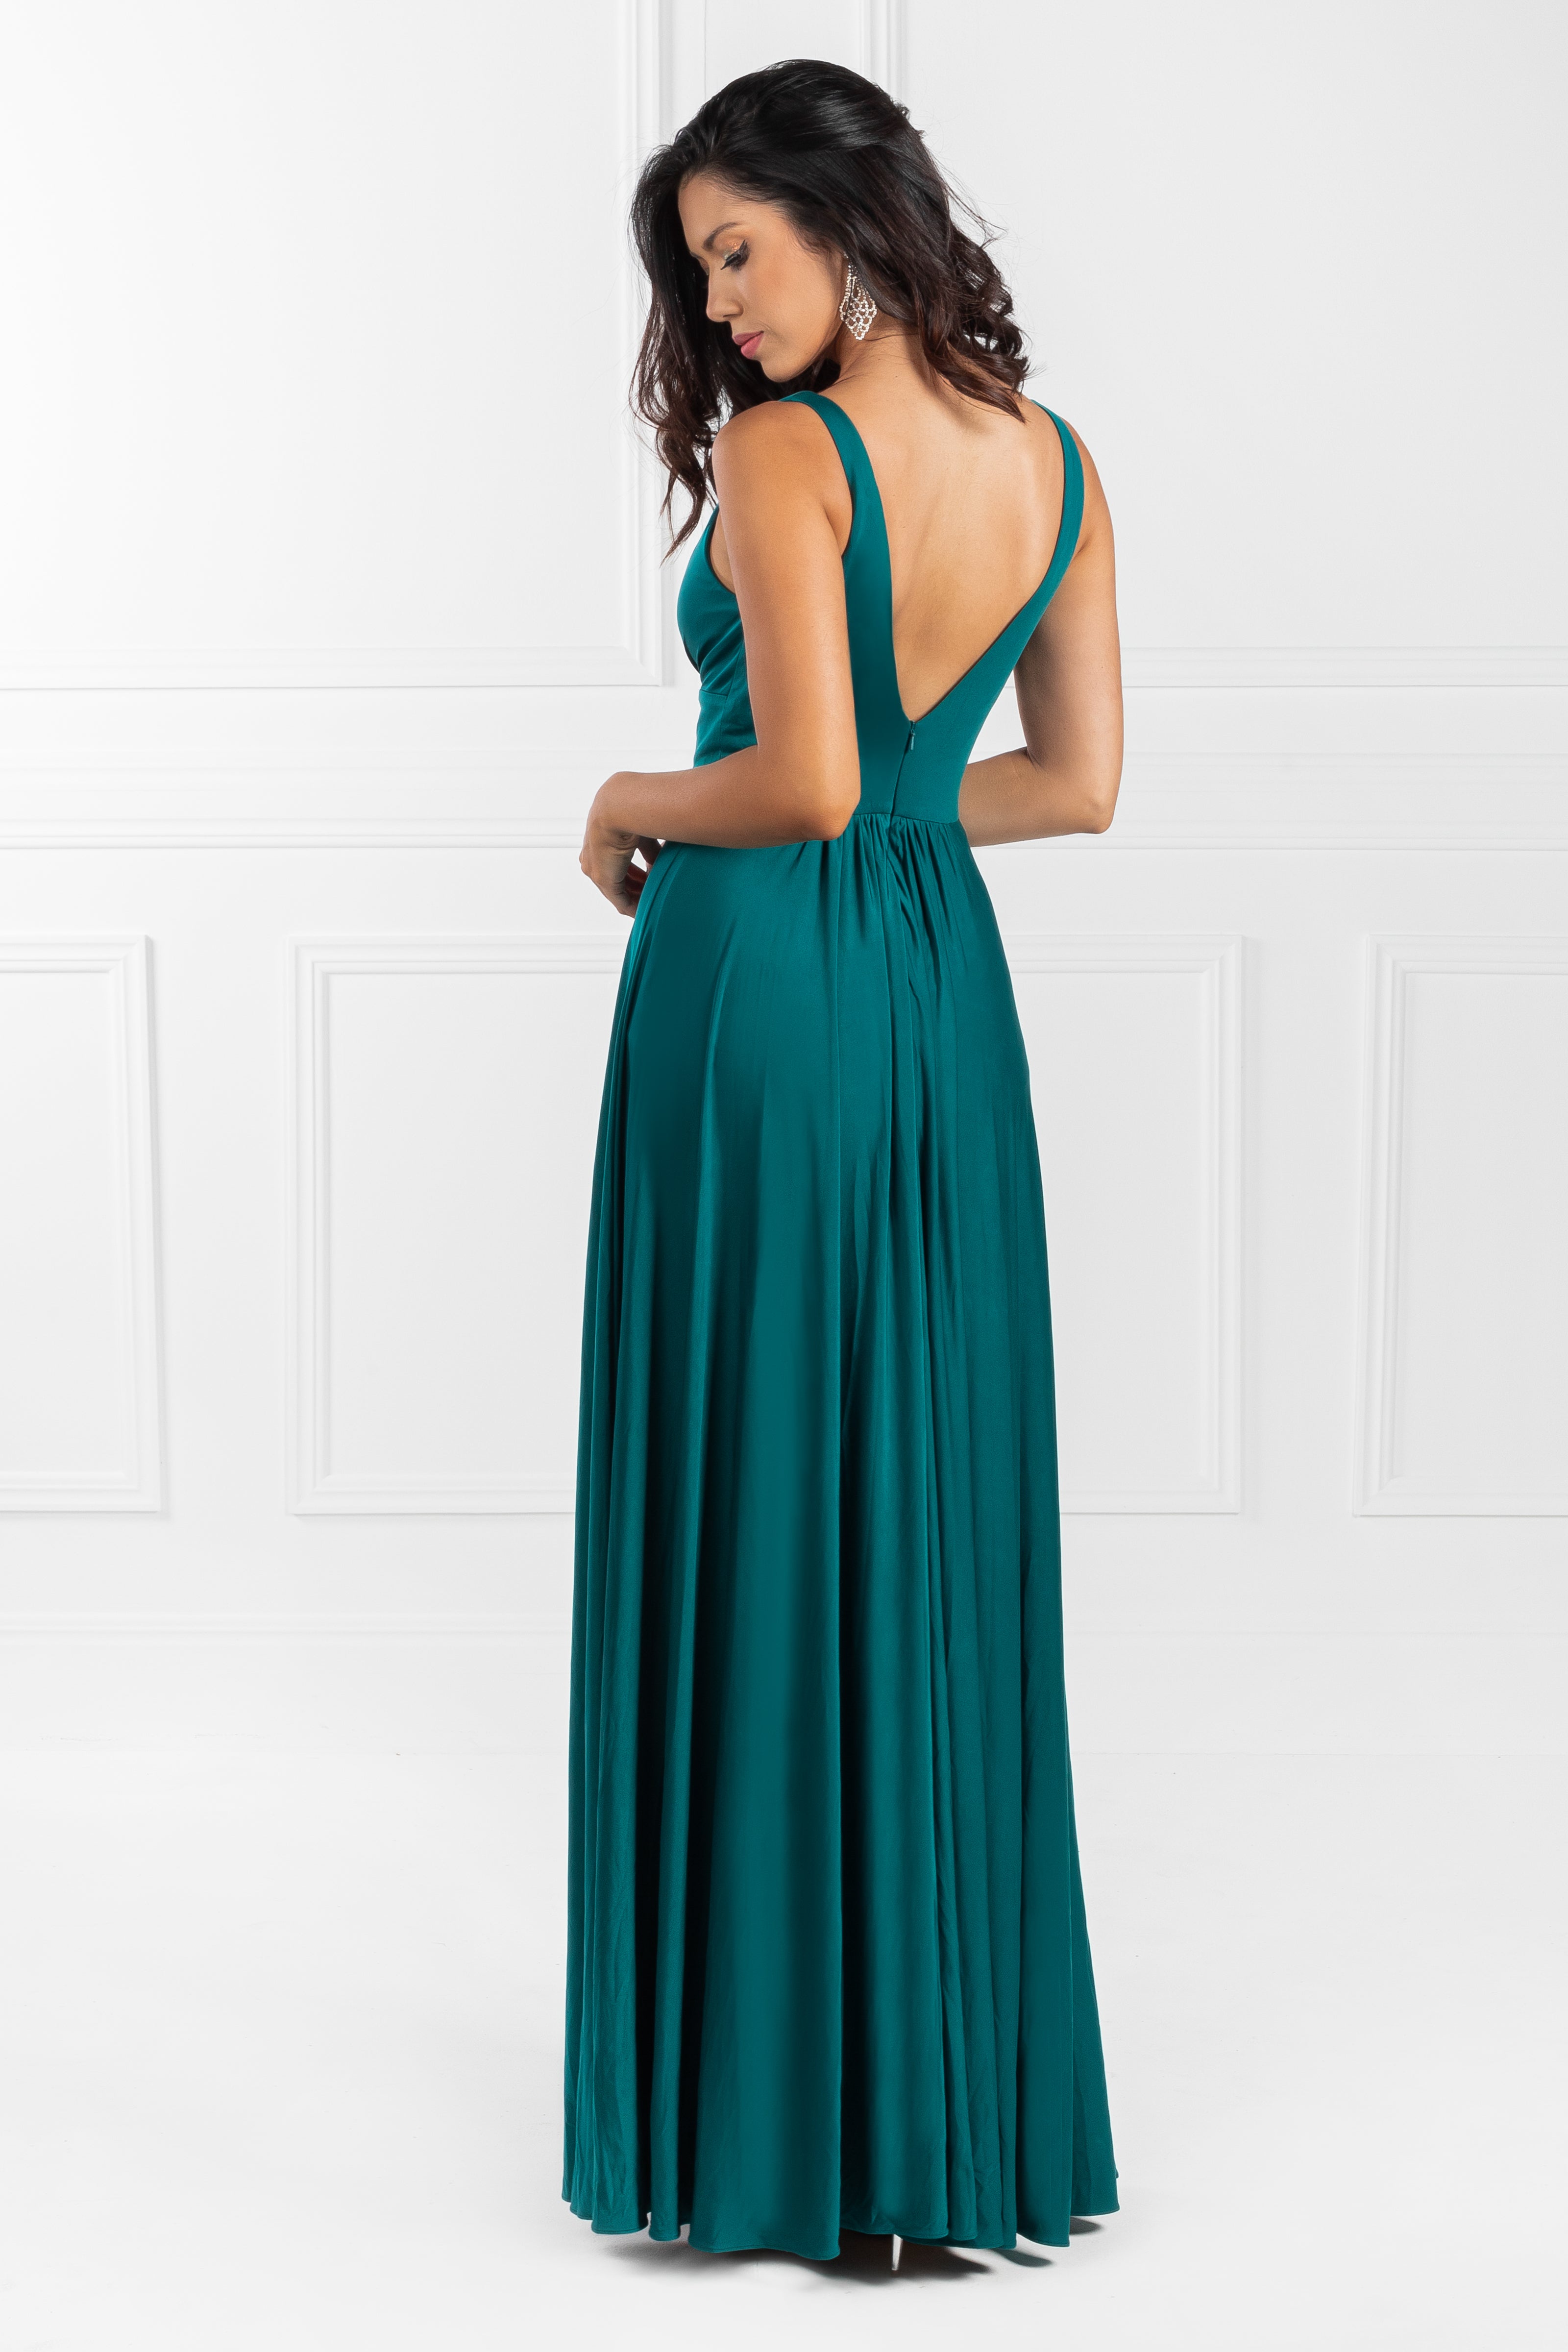 Honey Couture ELLE Emerald Green V Front Formal Dress